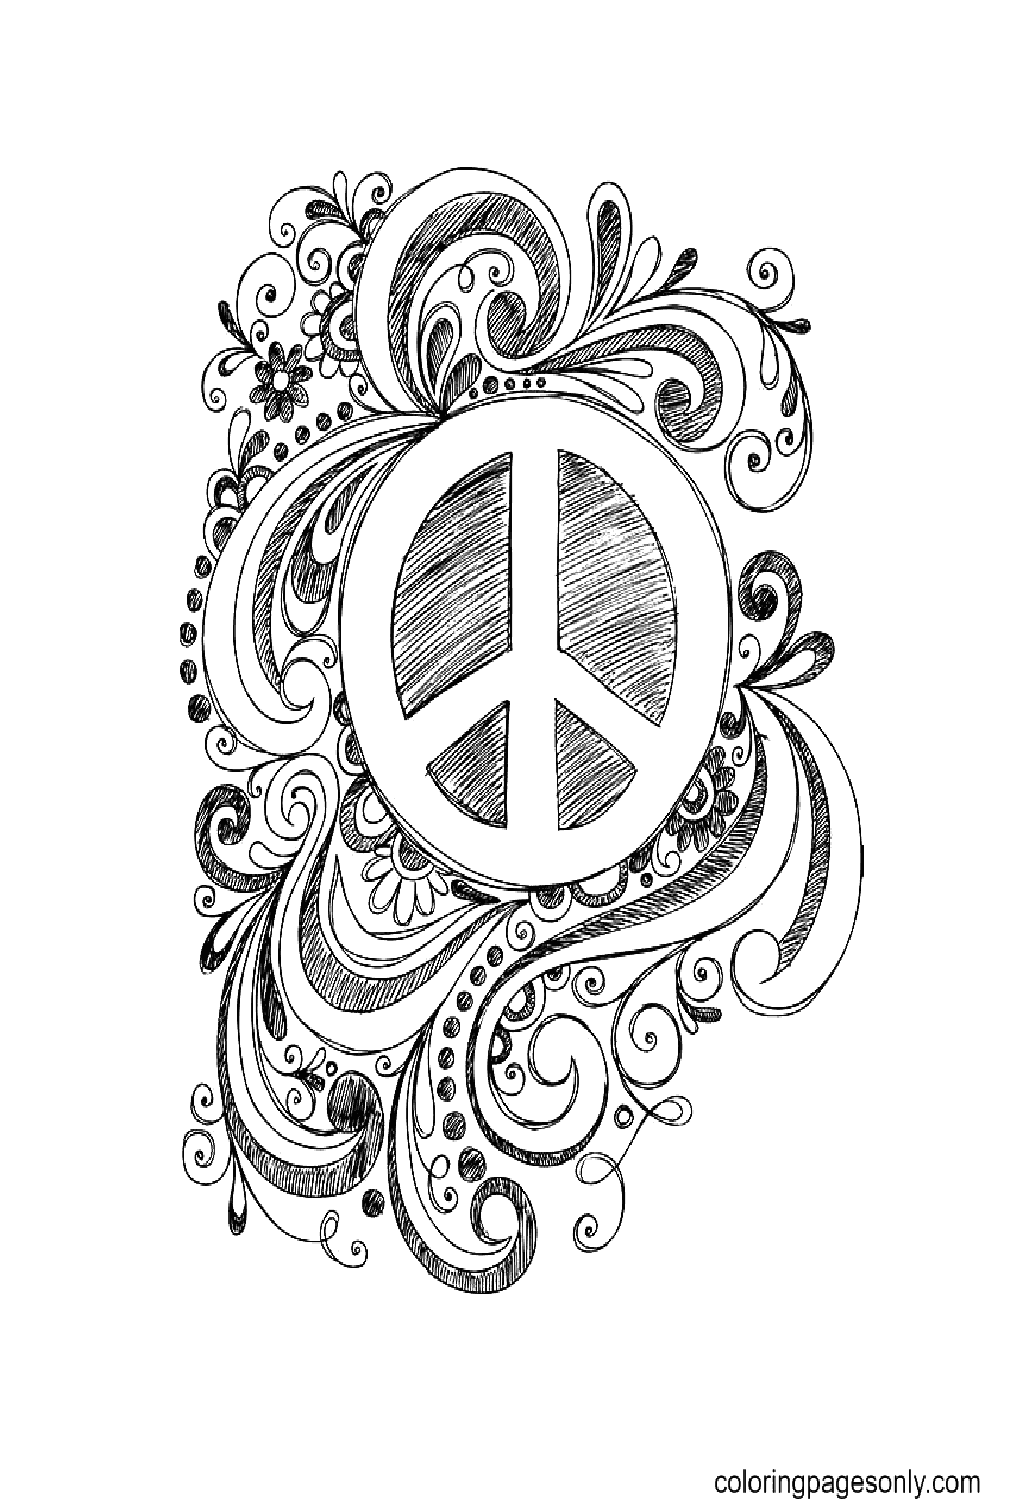 Бесплатная распечатка знака мира в честь Международного дня мира